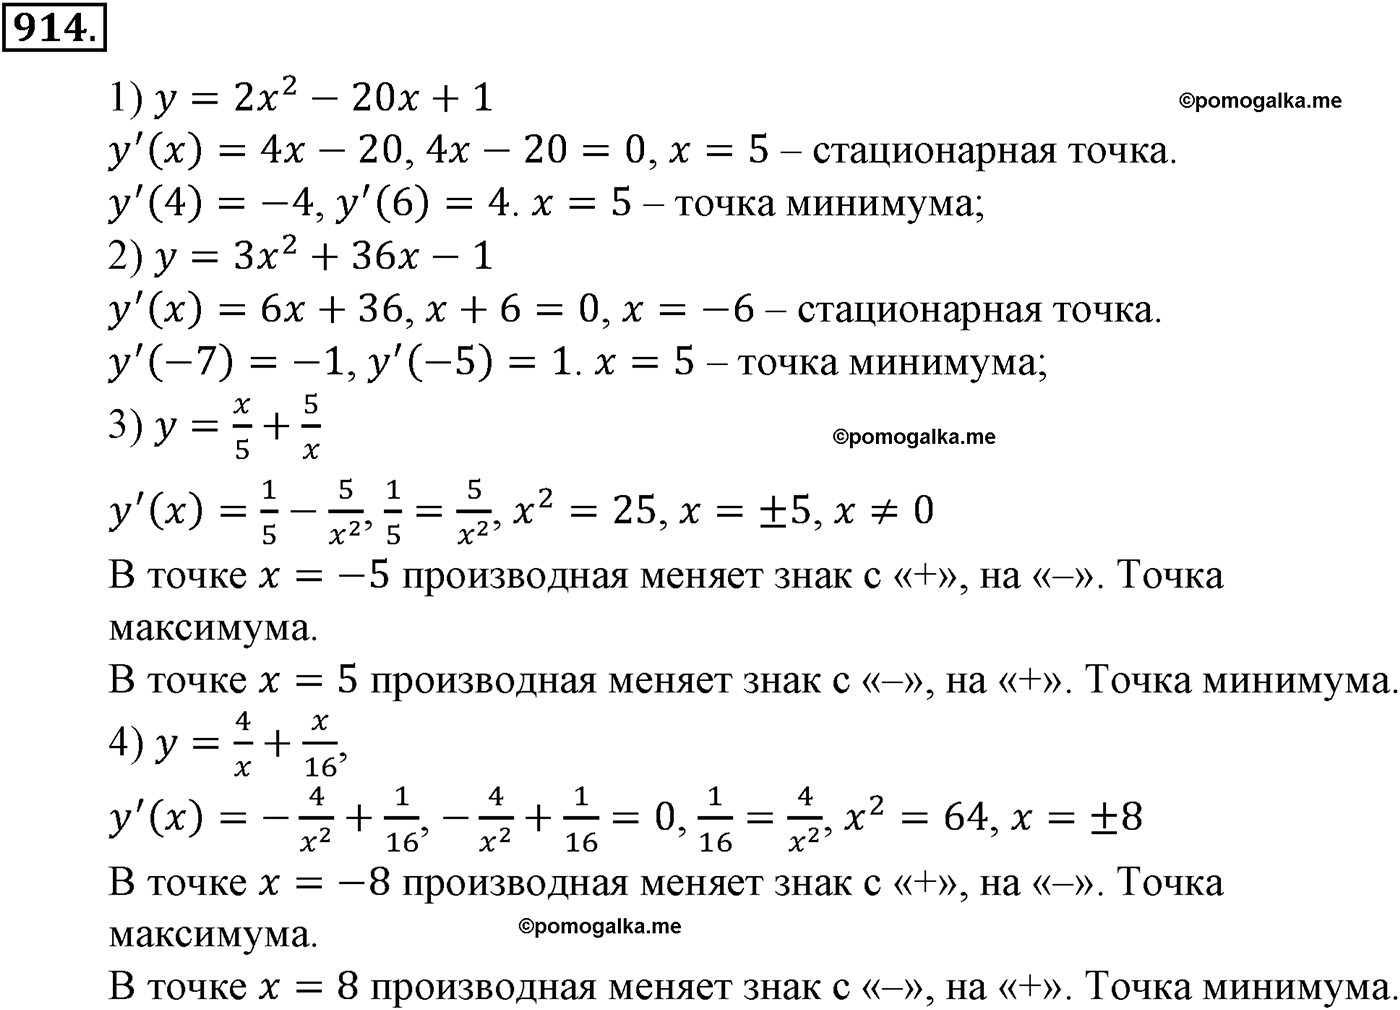 разбор задачи №914 по алгебре за 10-11 класс из учебника Алимова, Колягина